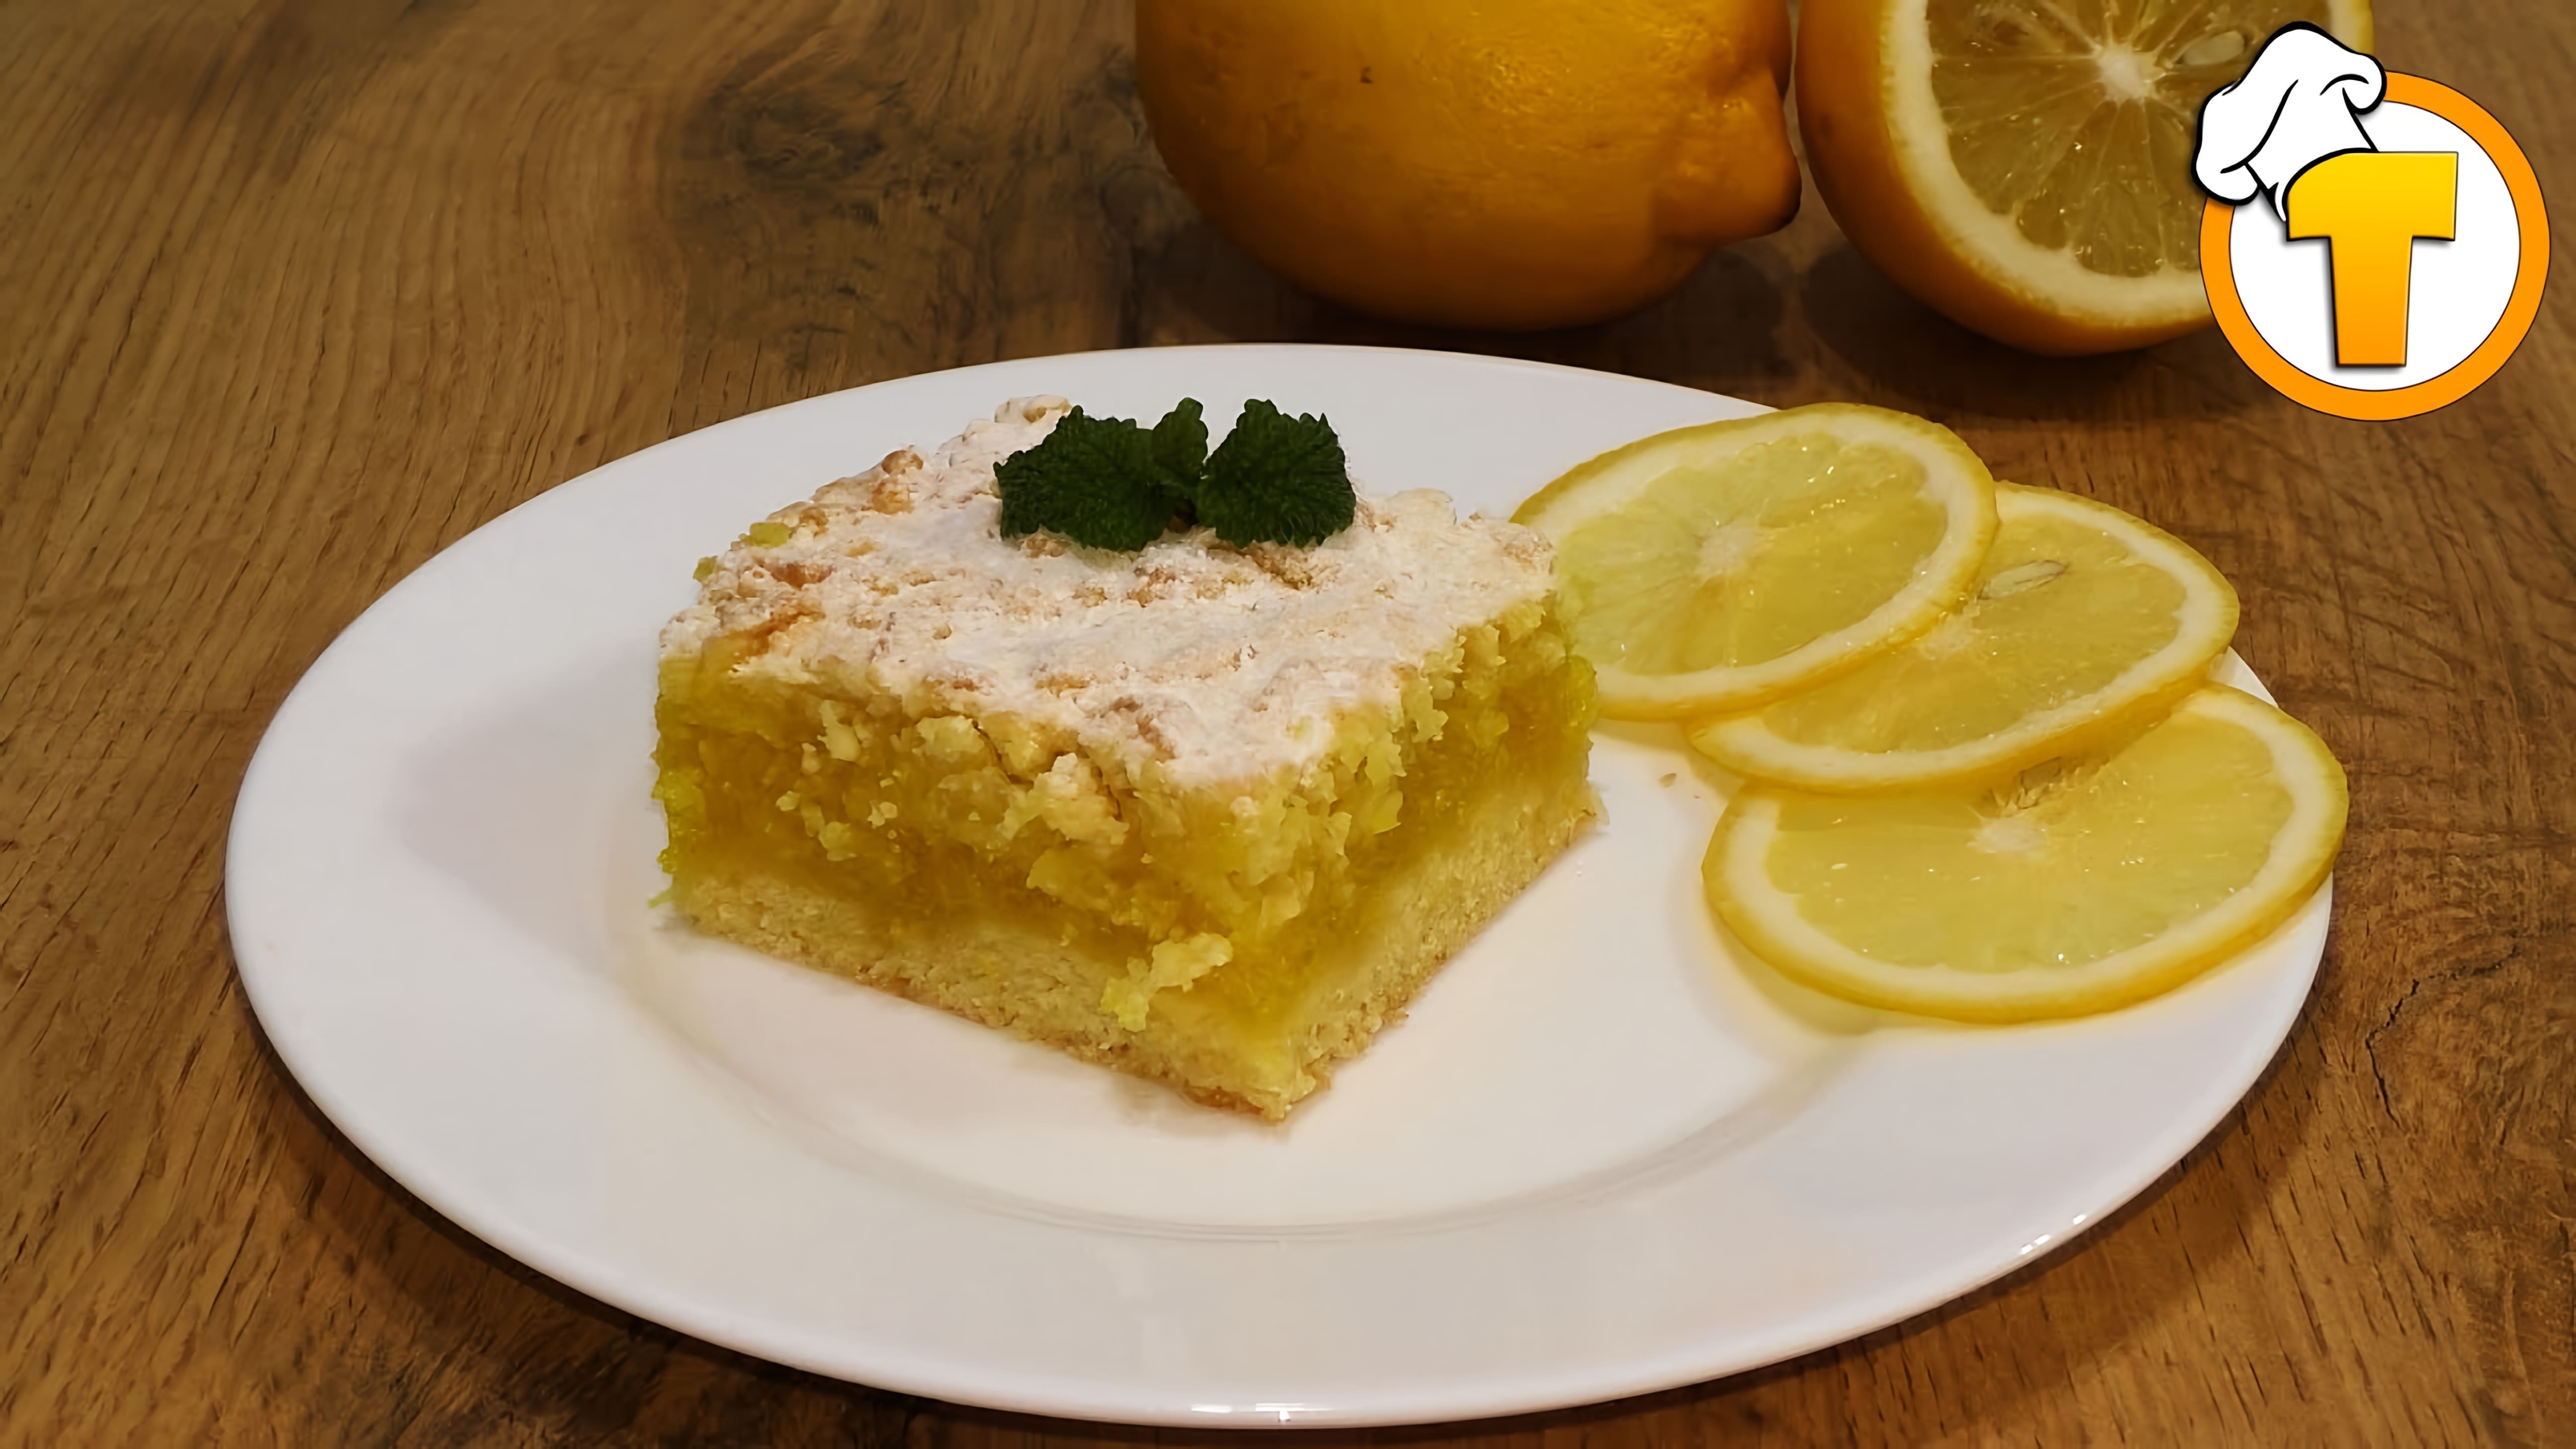 В этом видео демонстрируется процесс приготовления яблочно-лимонного пирога